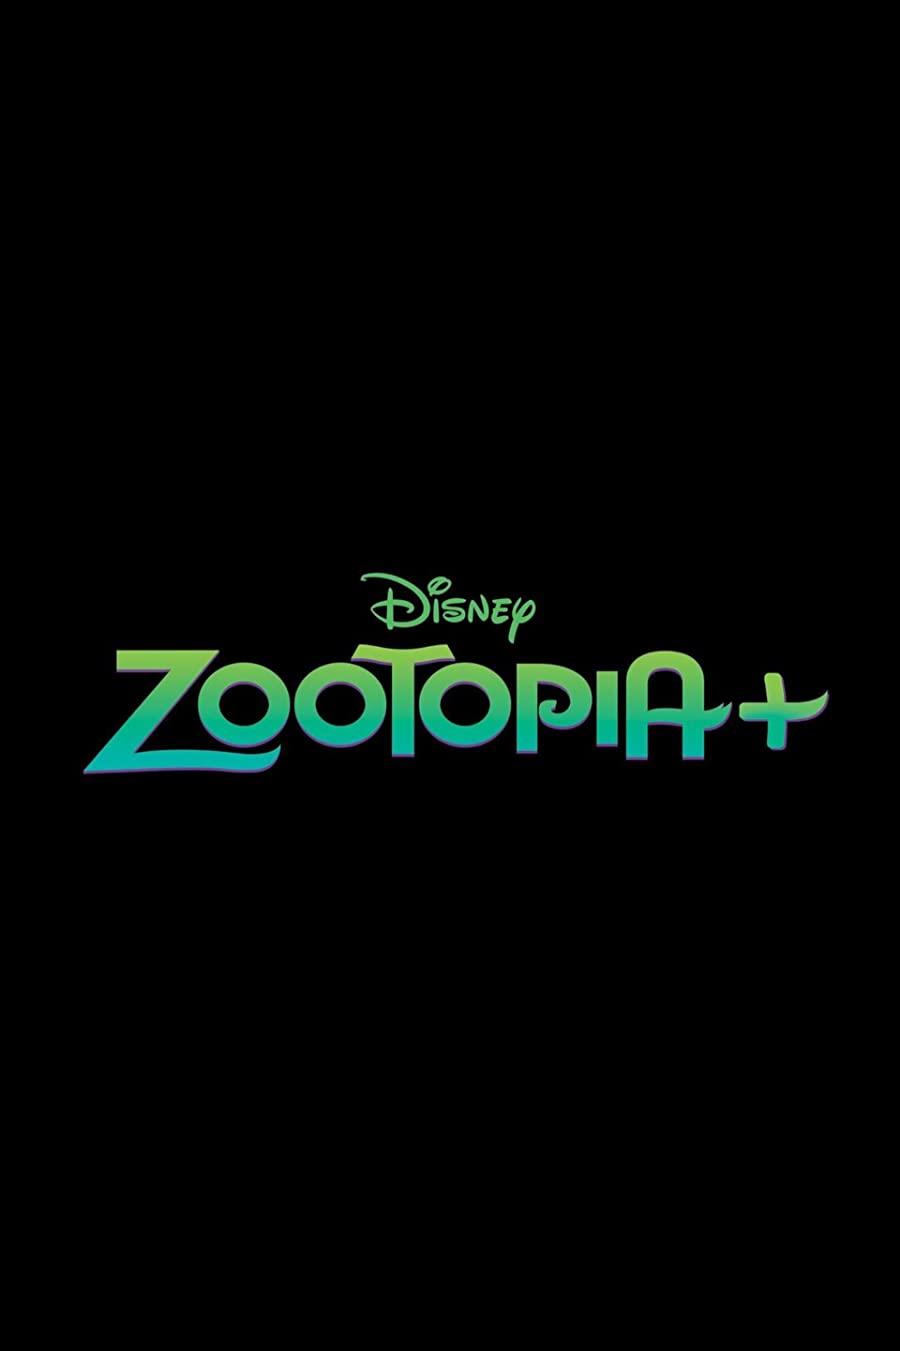 دانلود سریال Zootopia+ 2022 زوتوپیا پلاس (زوتوپیا +) فصل اول قسمت 1 تا 6 با زیرنویس فارسی چسبیده